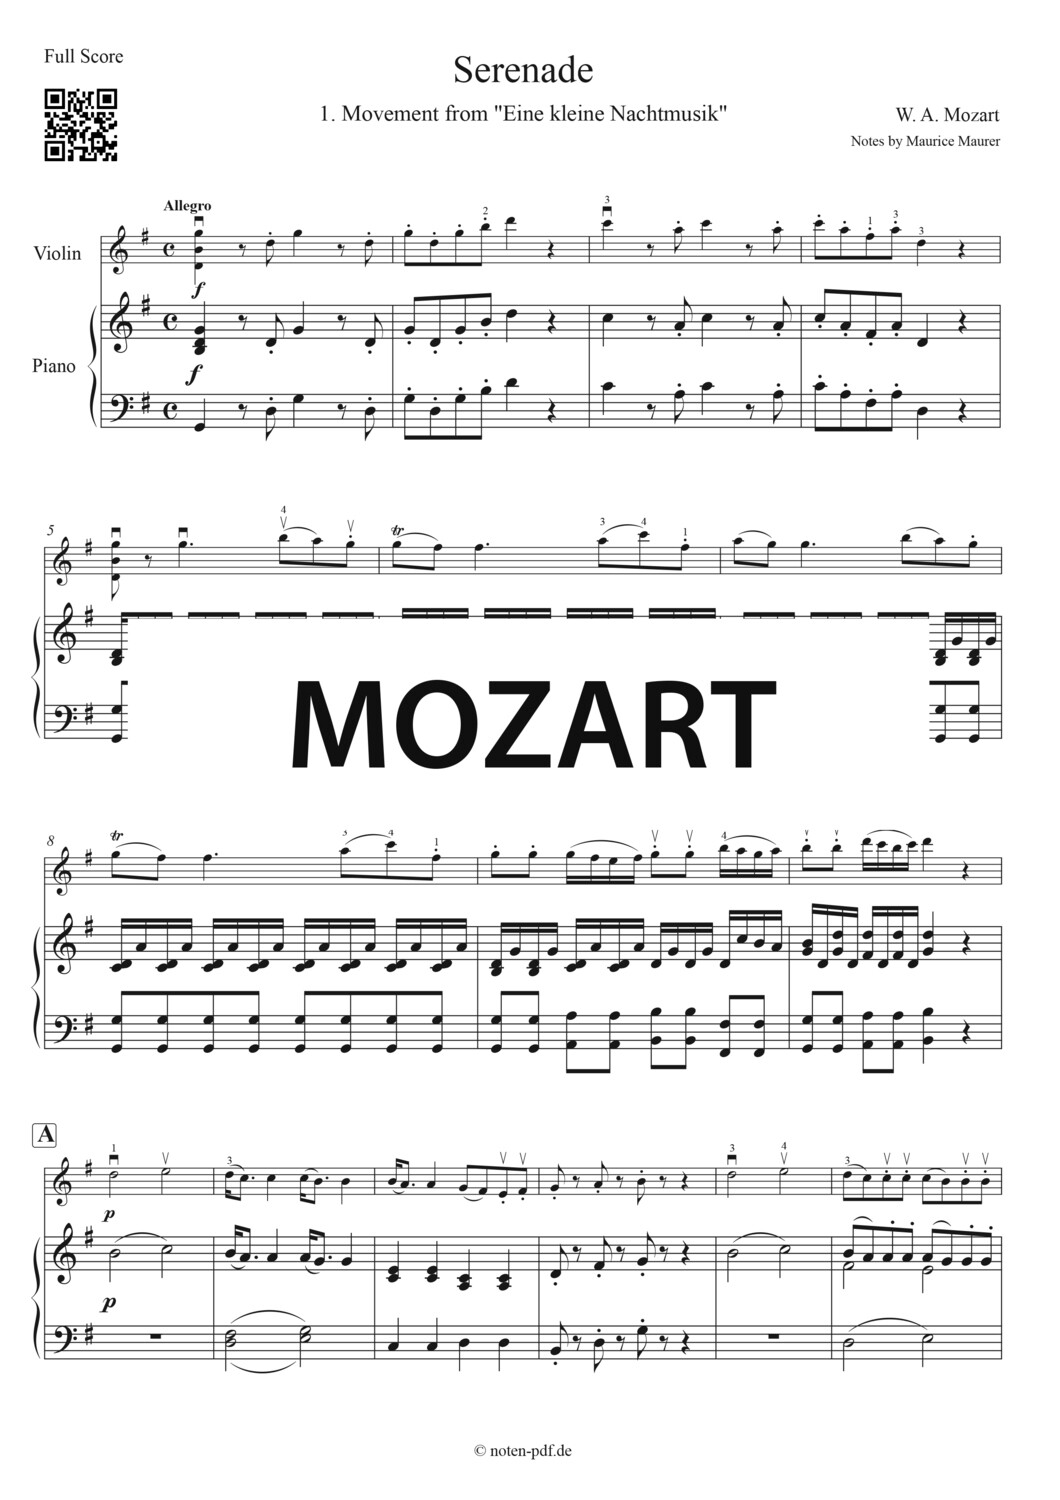 Mozart: Serenade from "Eine kleine Nachtmusik"